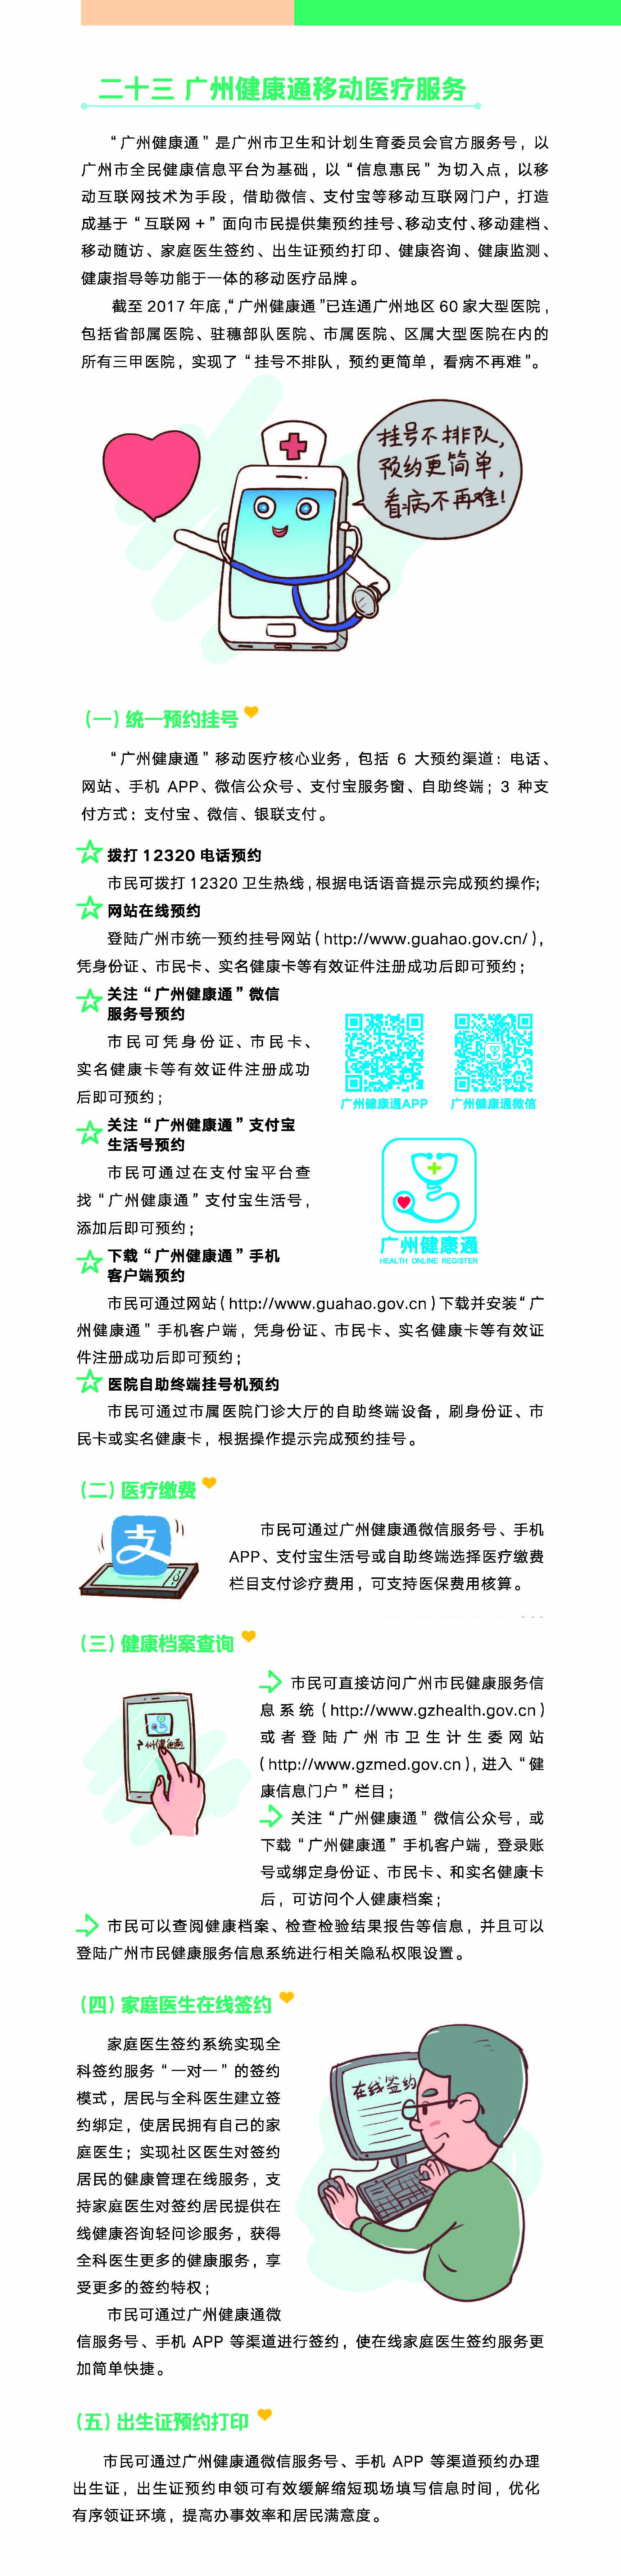 广州市民健康手册（广州健康移动医疗服务）.jpg